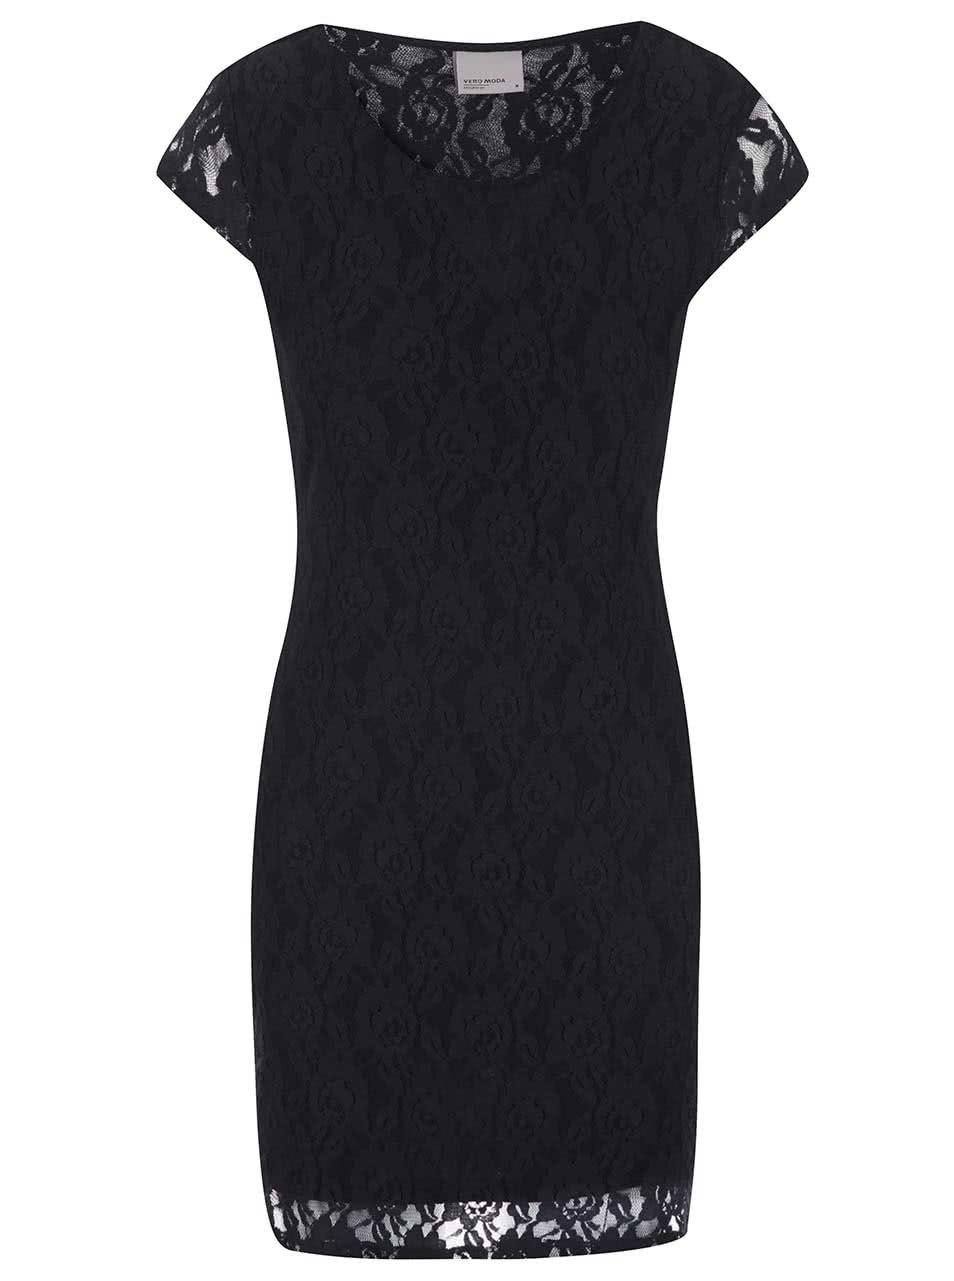 Černé krajkové šaty Vero Moda Lilly